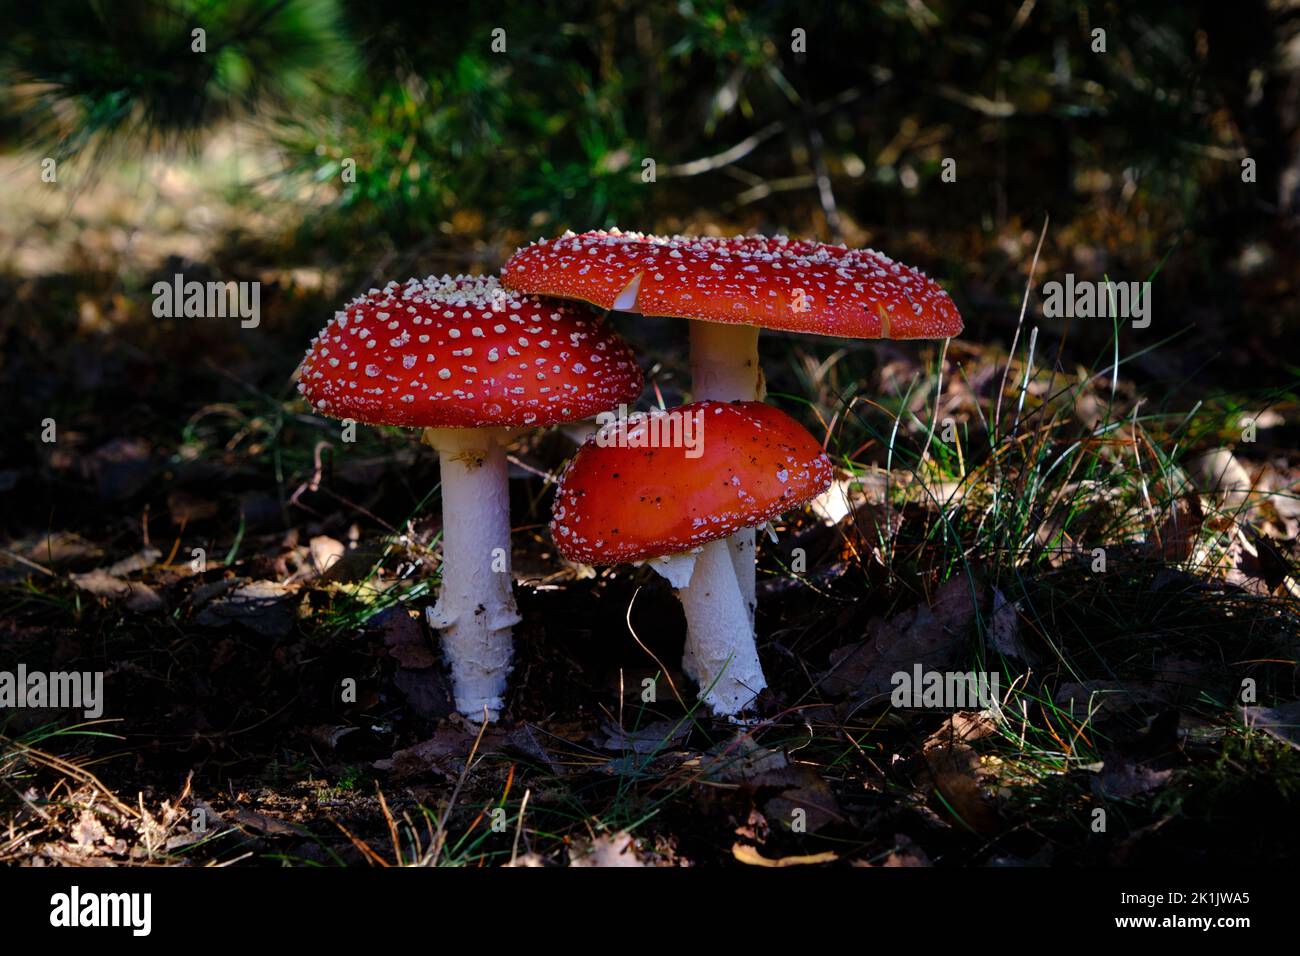 Groupe de 3 champignons Amanita muscaria, mouche agarique ou mouche amanita, à l'ombre sur le sol de la forêt. Très beau chapeau rouge foncé avec des points blancs. Le Banque D'Images